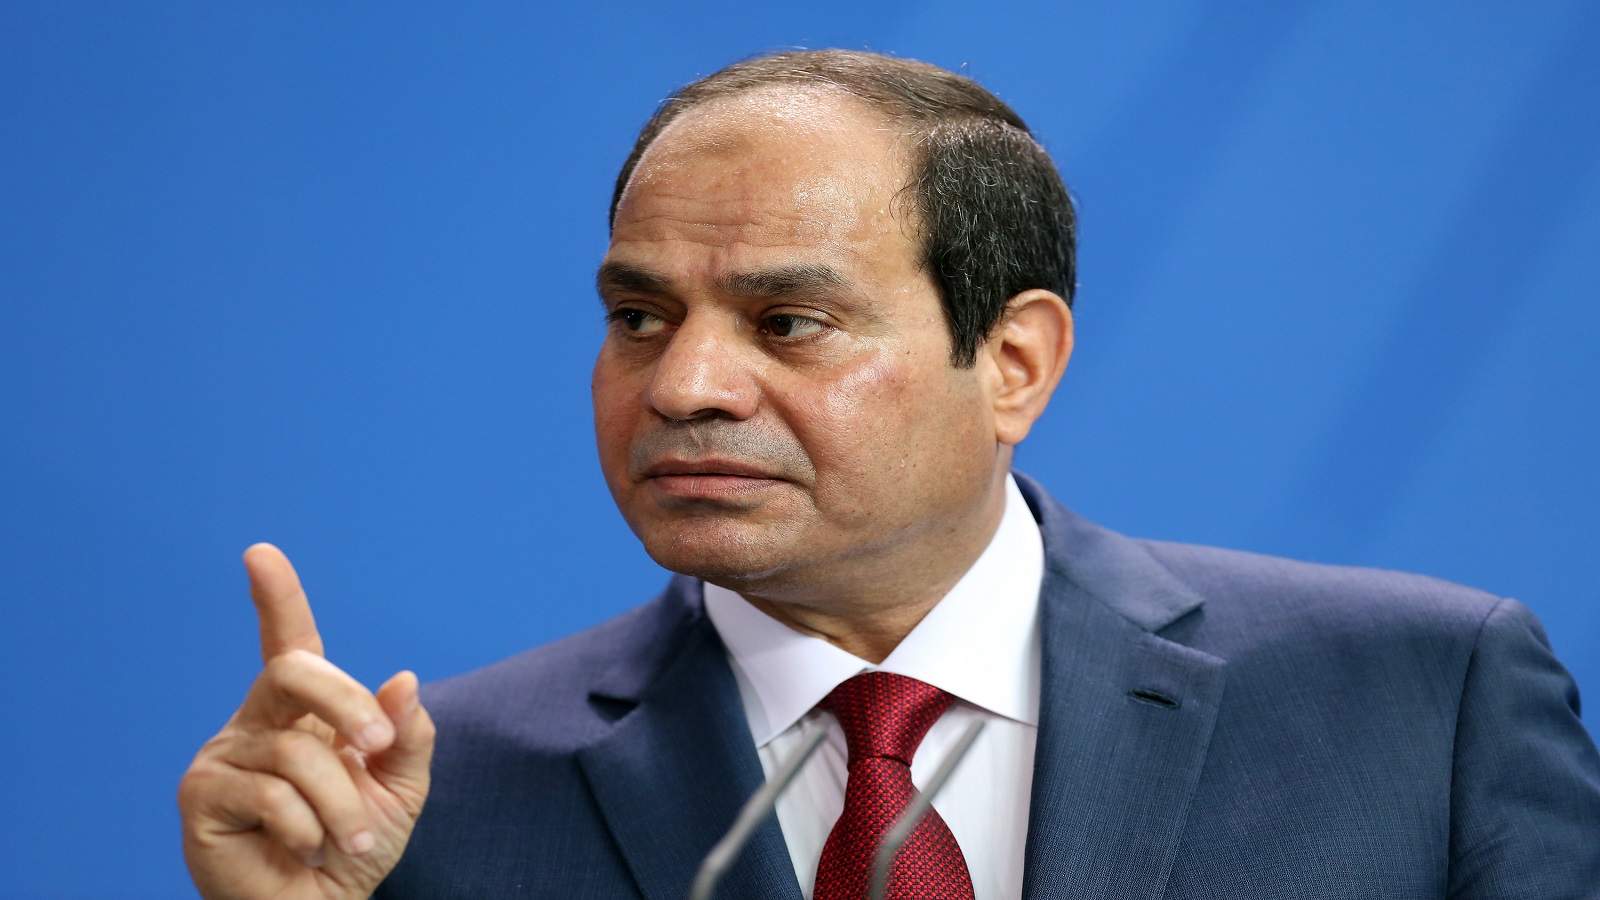 مصر تكافح "الأخبار الزائفة" ونقاد يردون: قمع جديد